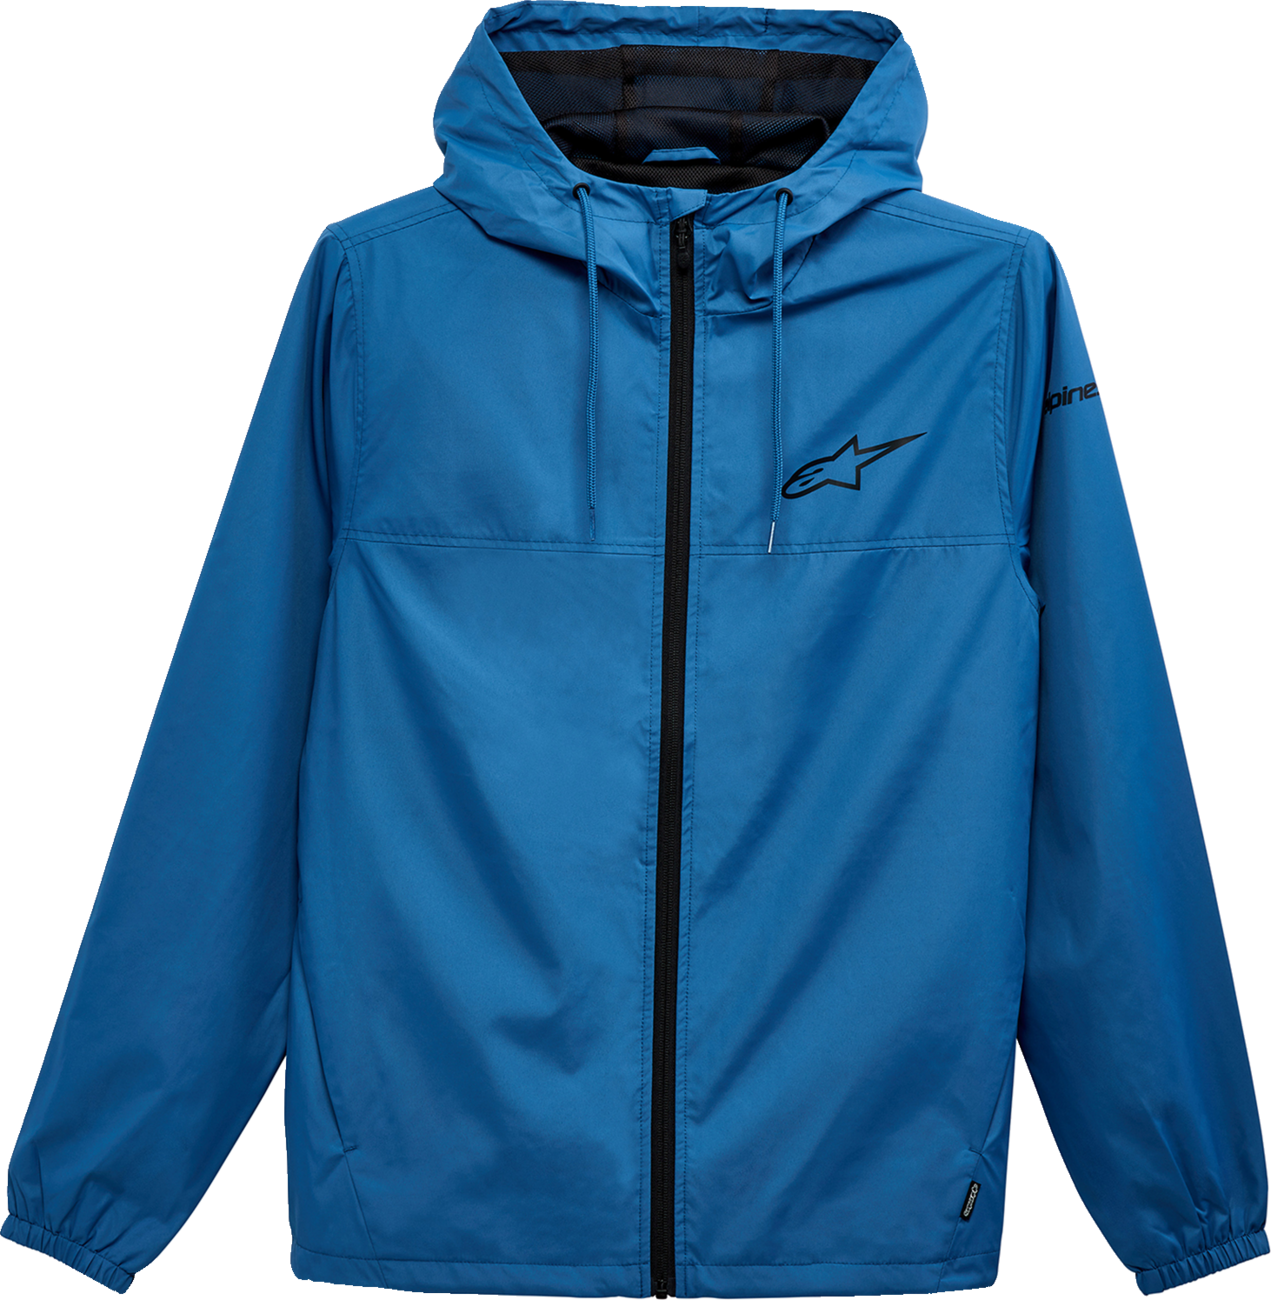 ALPINESTARS Treq Jacket - Blue - Large 1232-11020-72-L